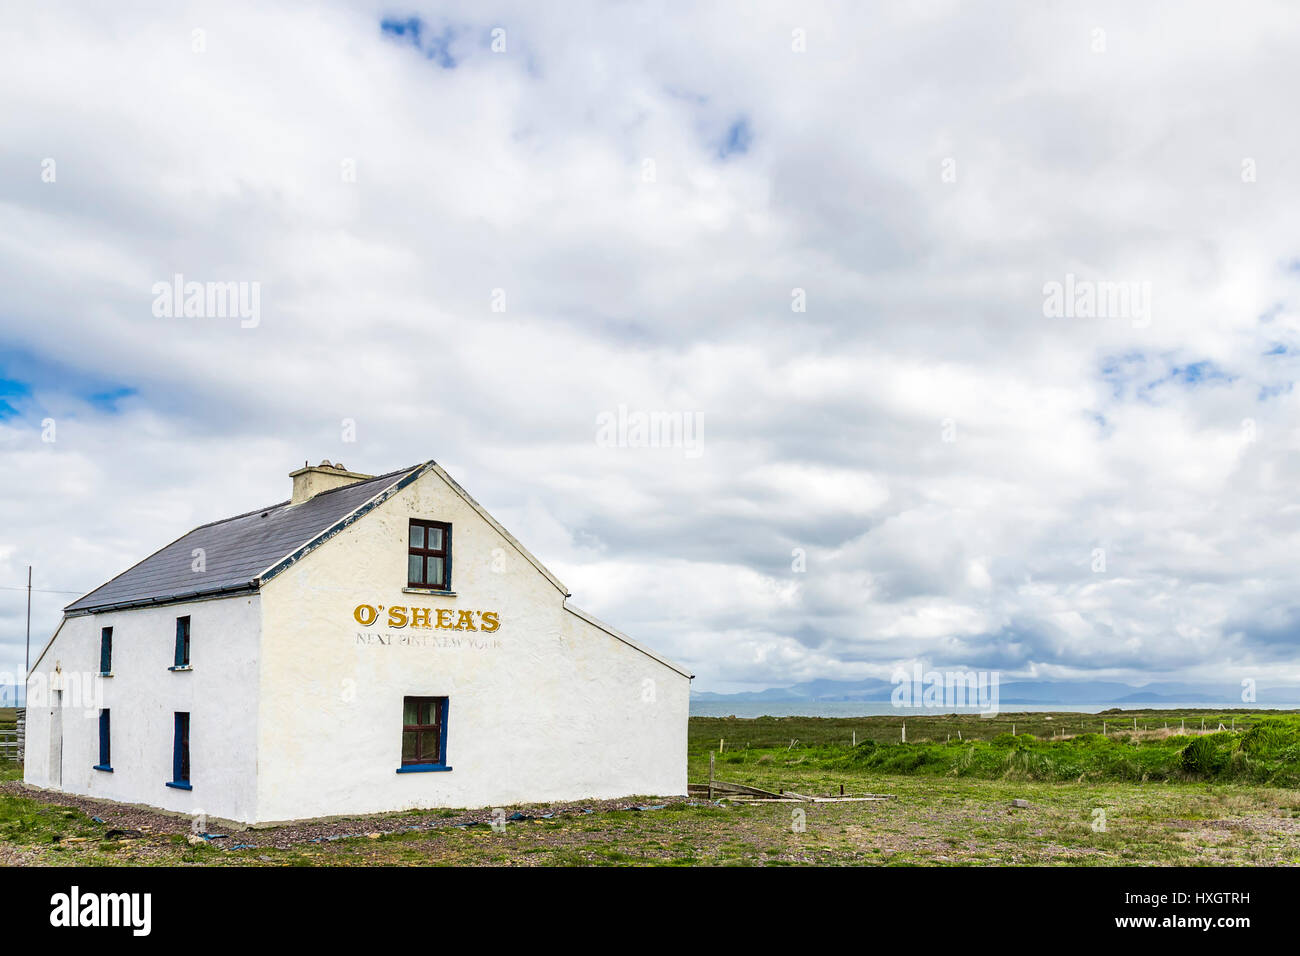 O'Shea's pub, abandonnés sur l'île de Valentia, comté de Kerry, Irlande Banque D'Images